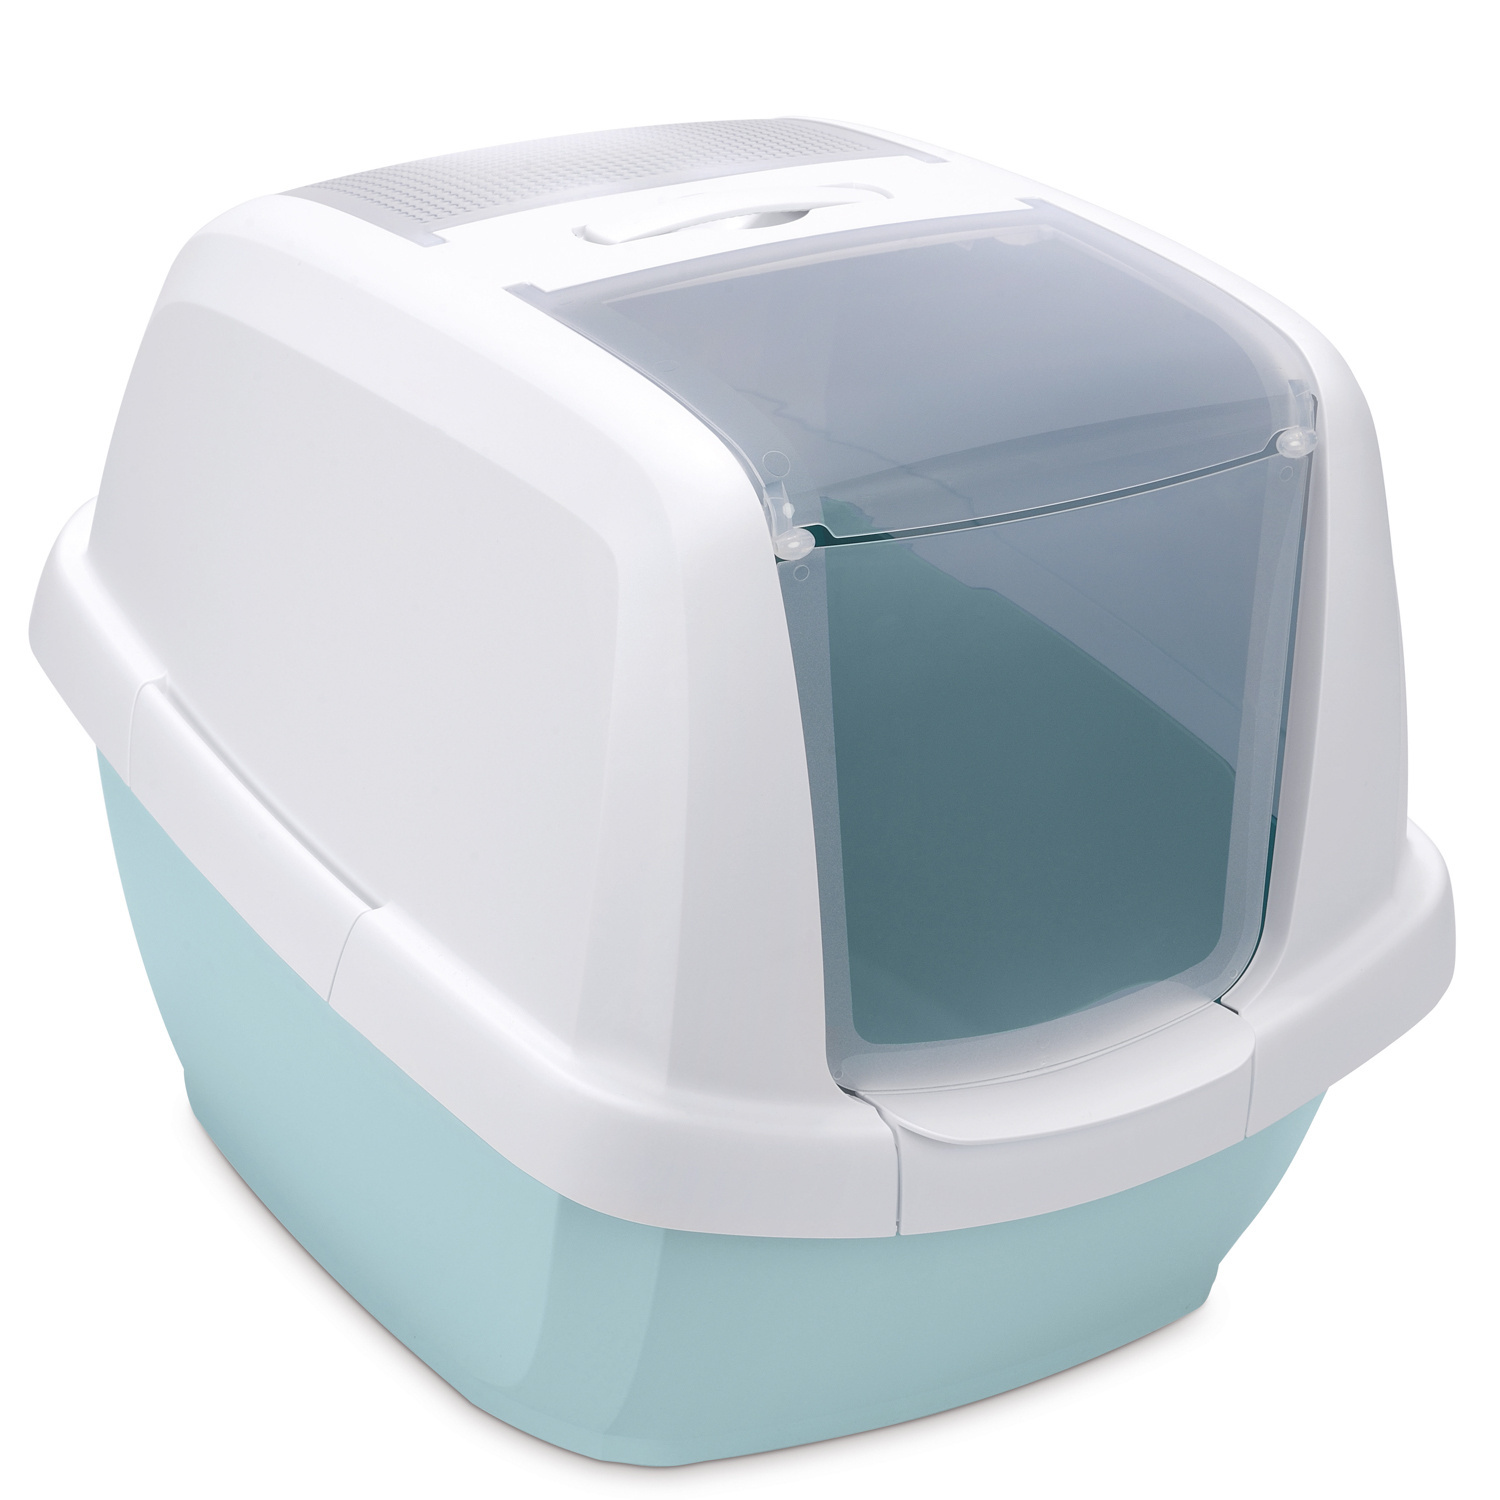 IMAC IMAC био-туалет для кошек , белый/цвет морской волны (2,85 кг) цена и фото